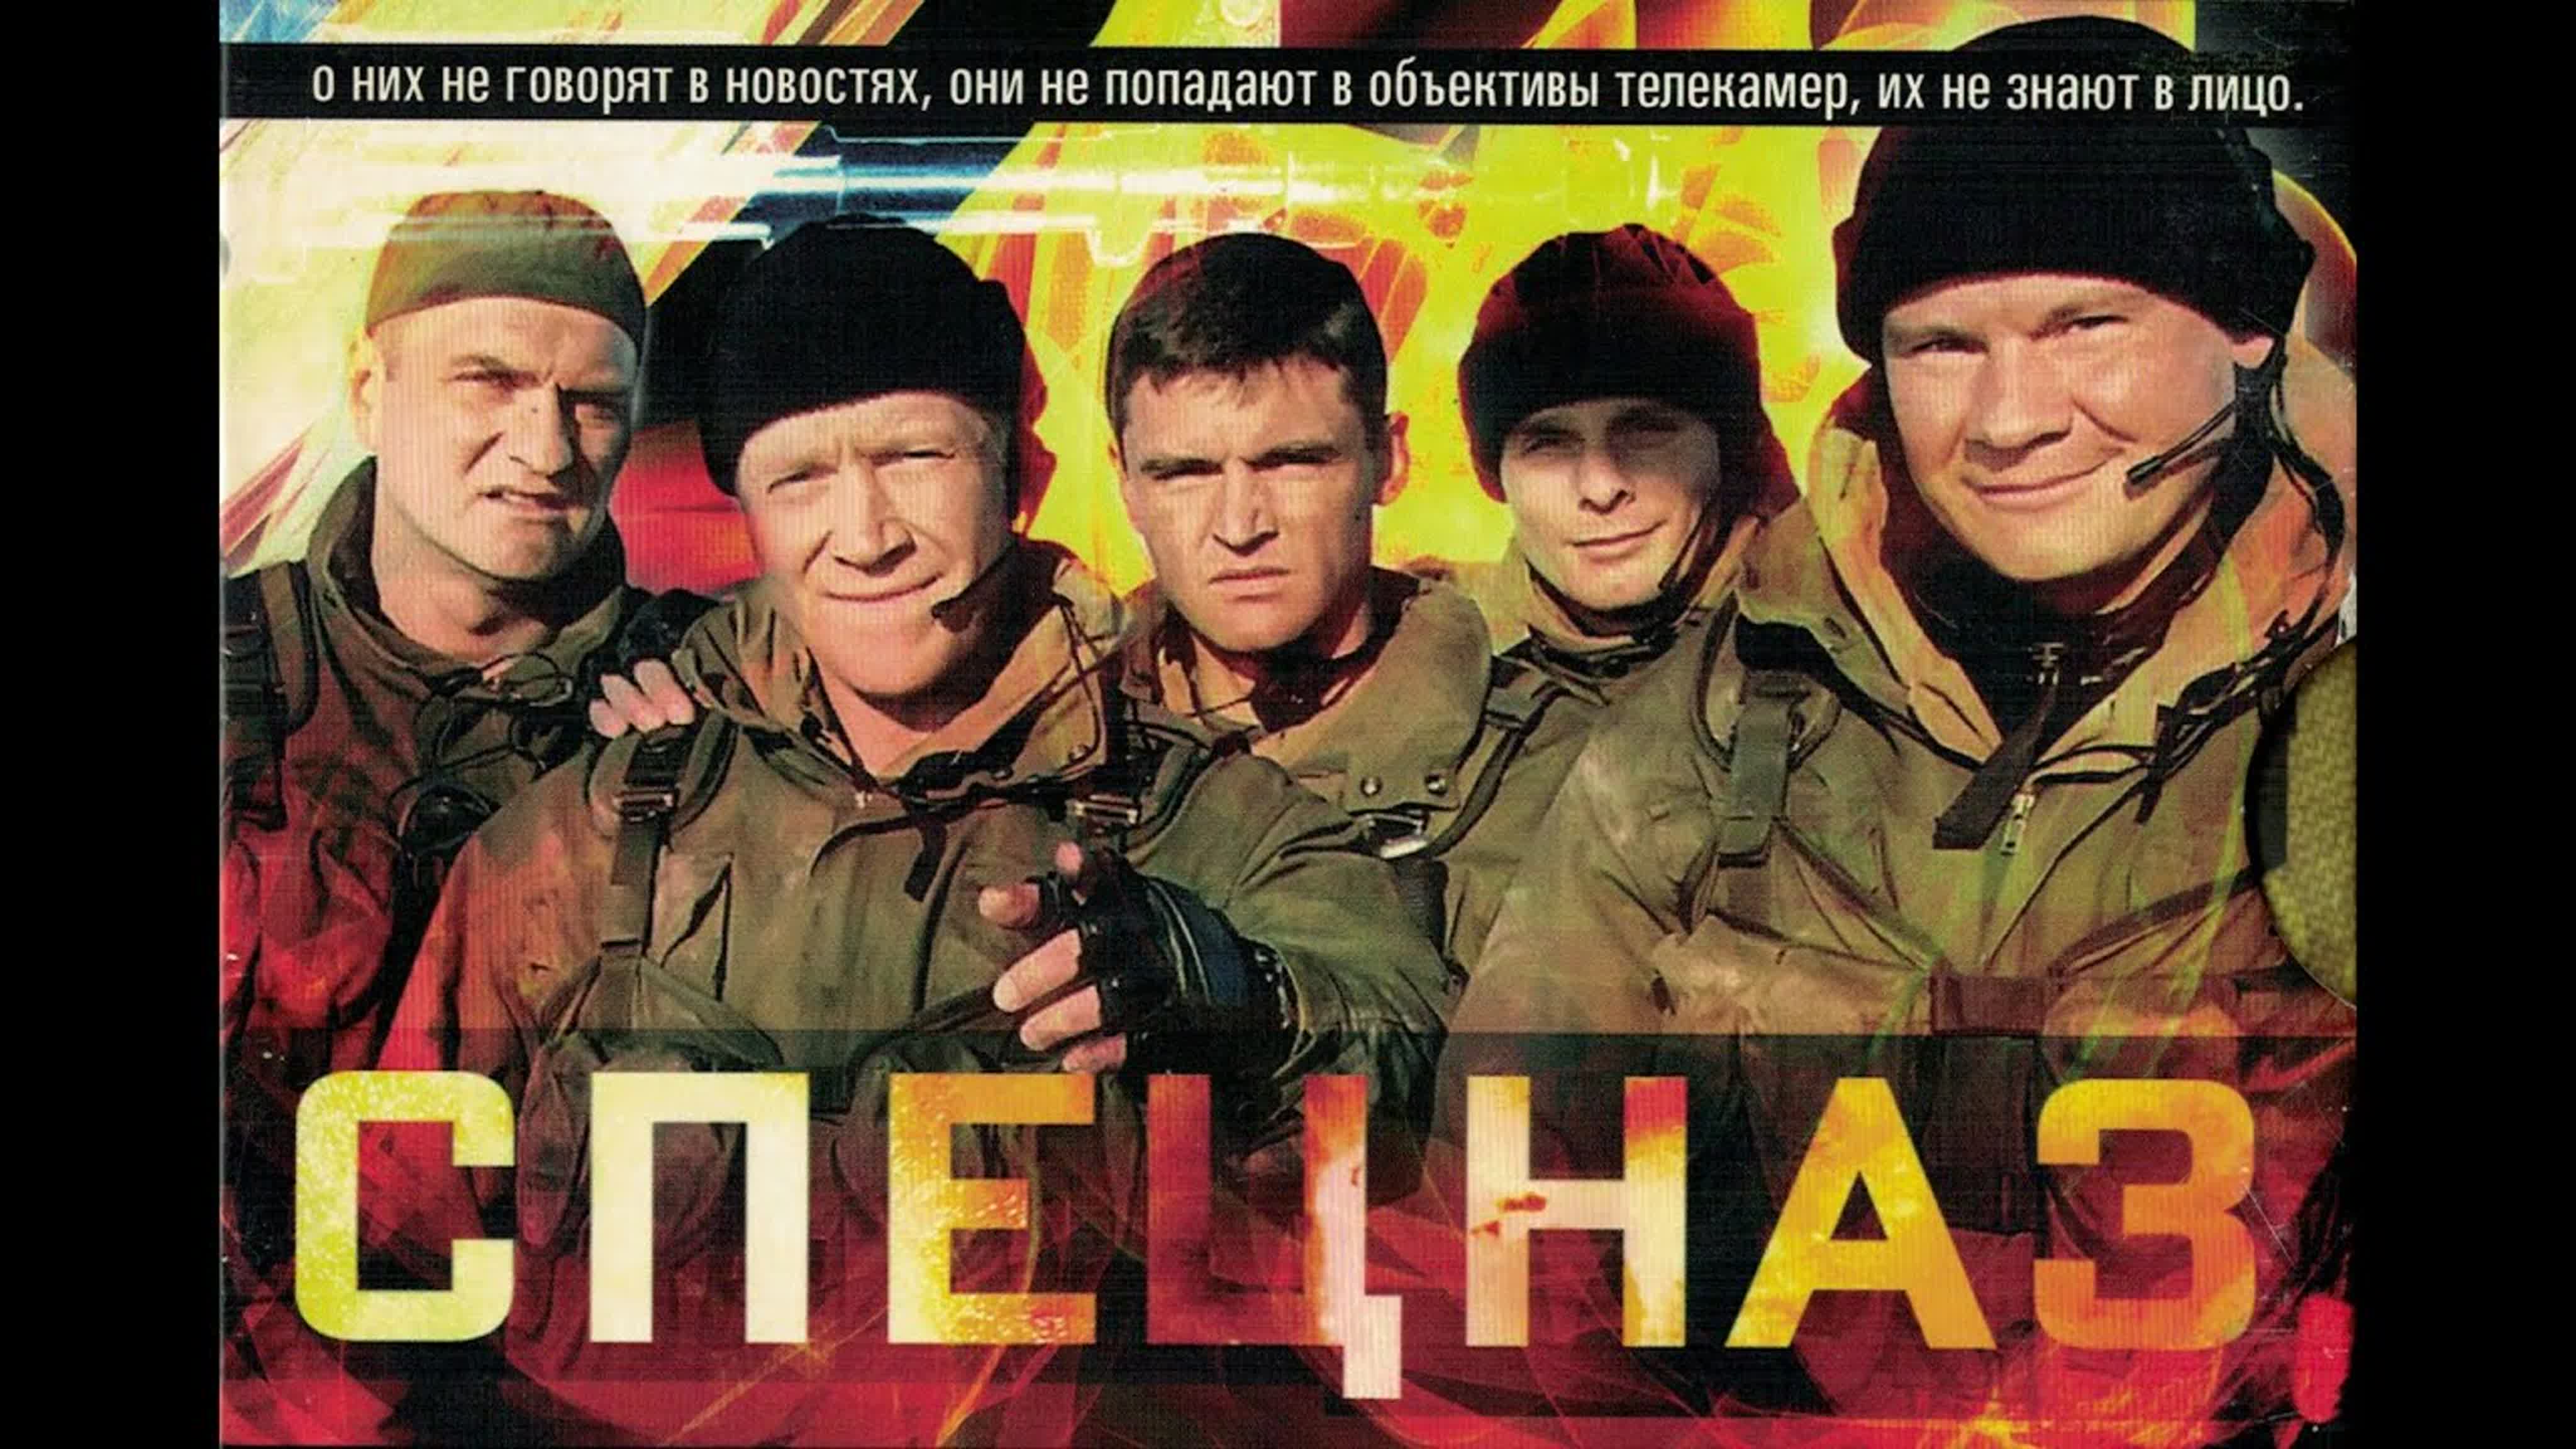 «Спецназ» — Русский сериал 2002 - 2003 года.